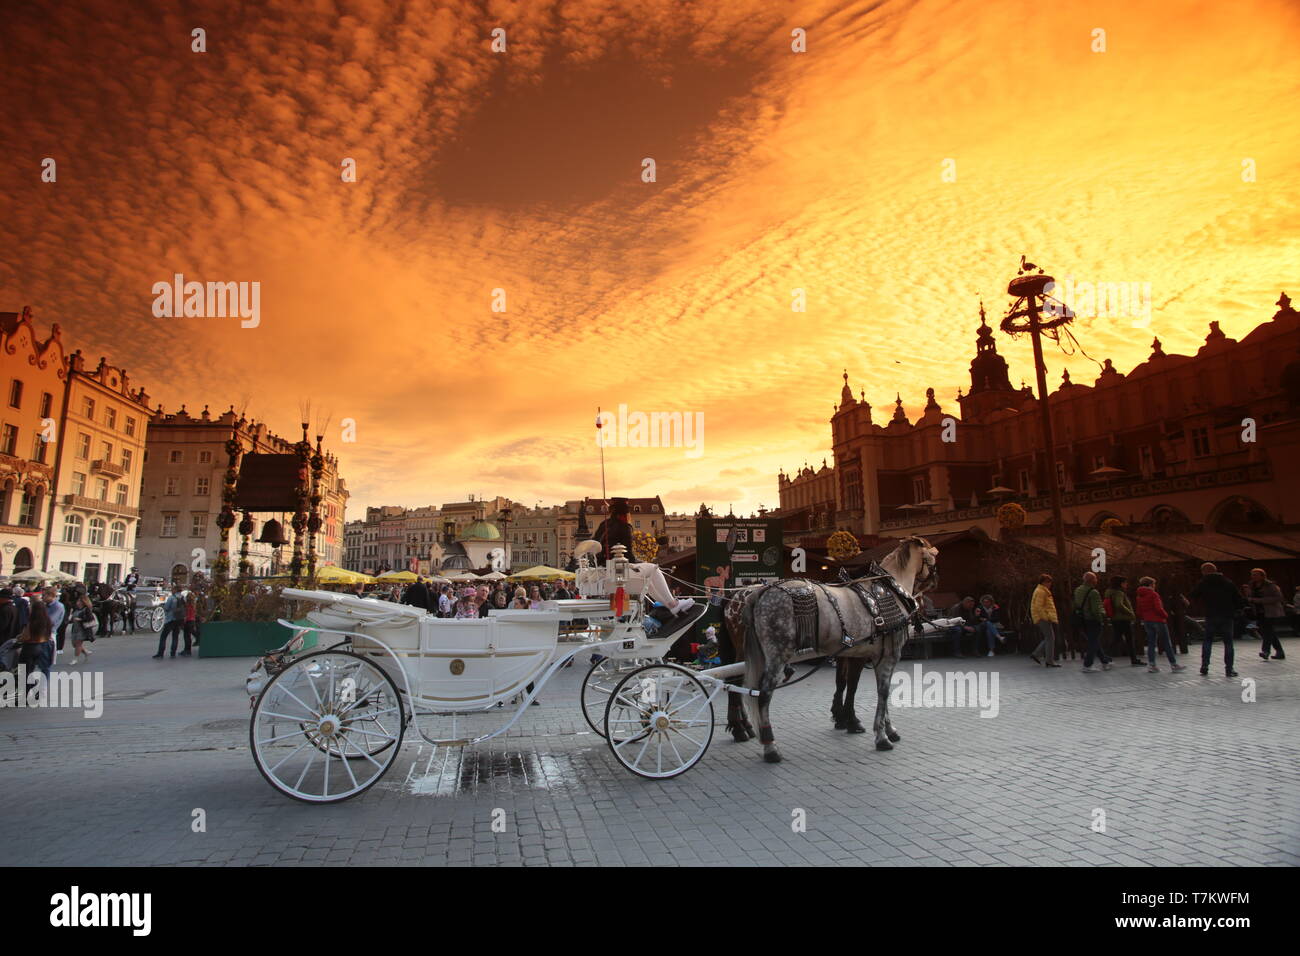 Cracow, Krakau , Poland - .Old Town.Market Square. Stock Photo